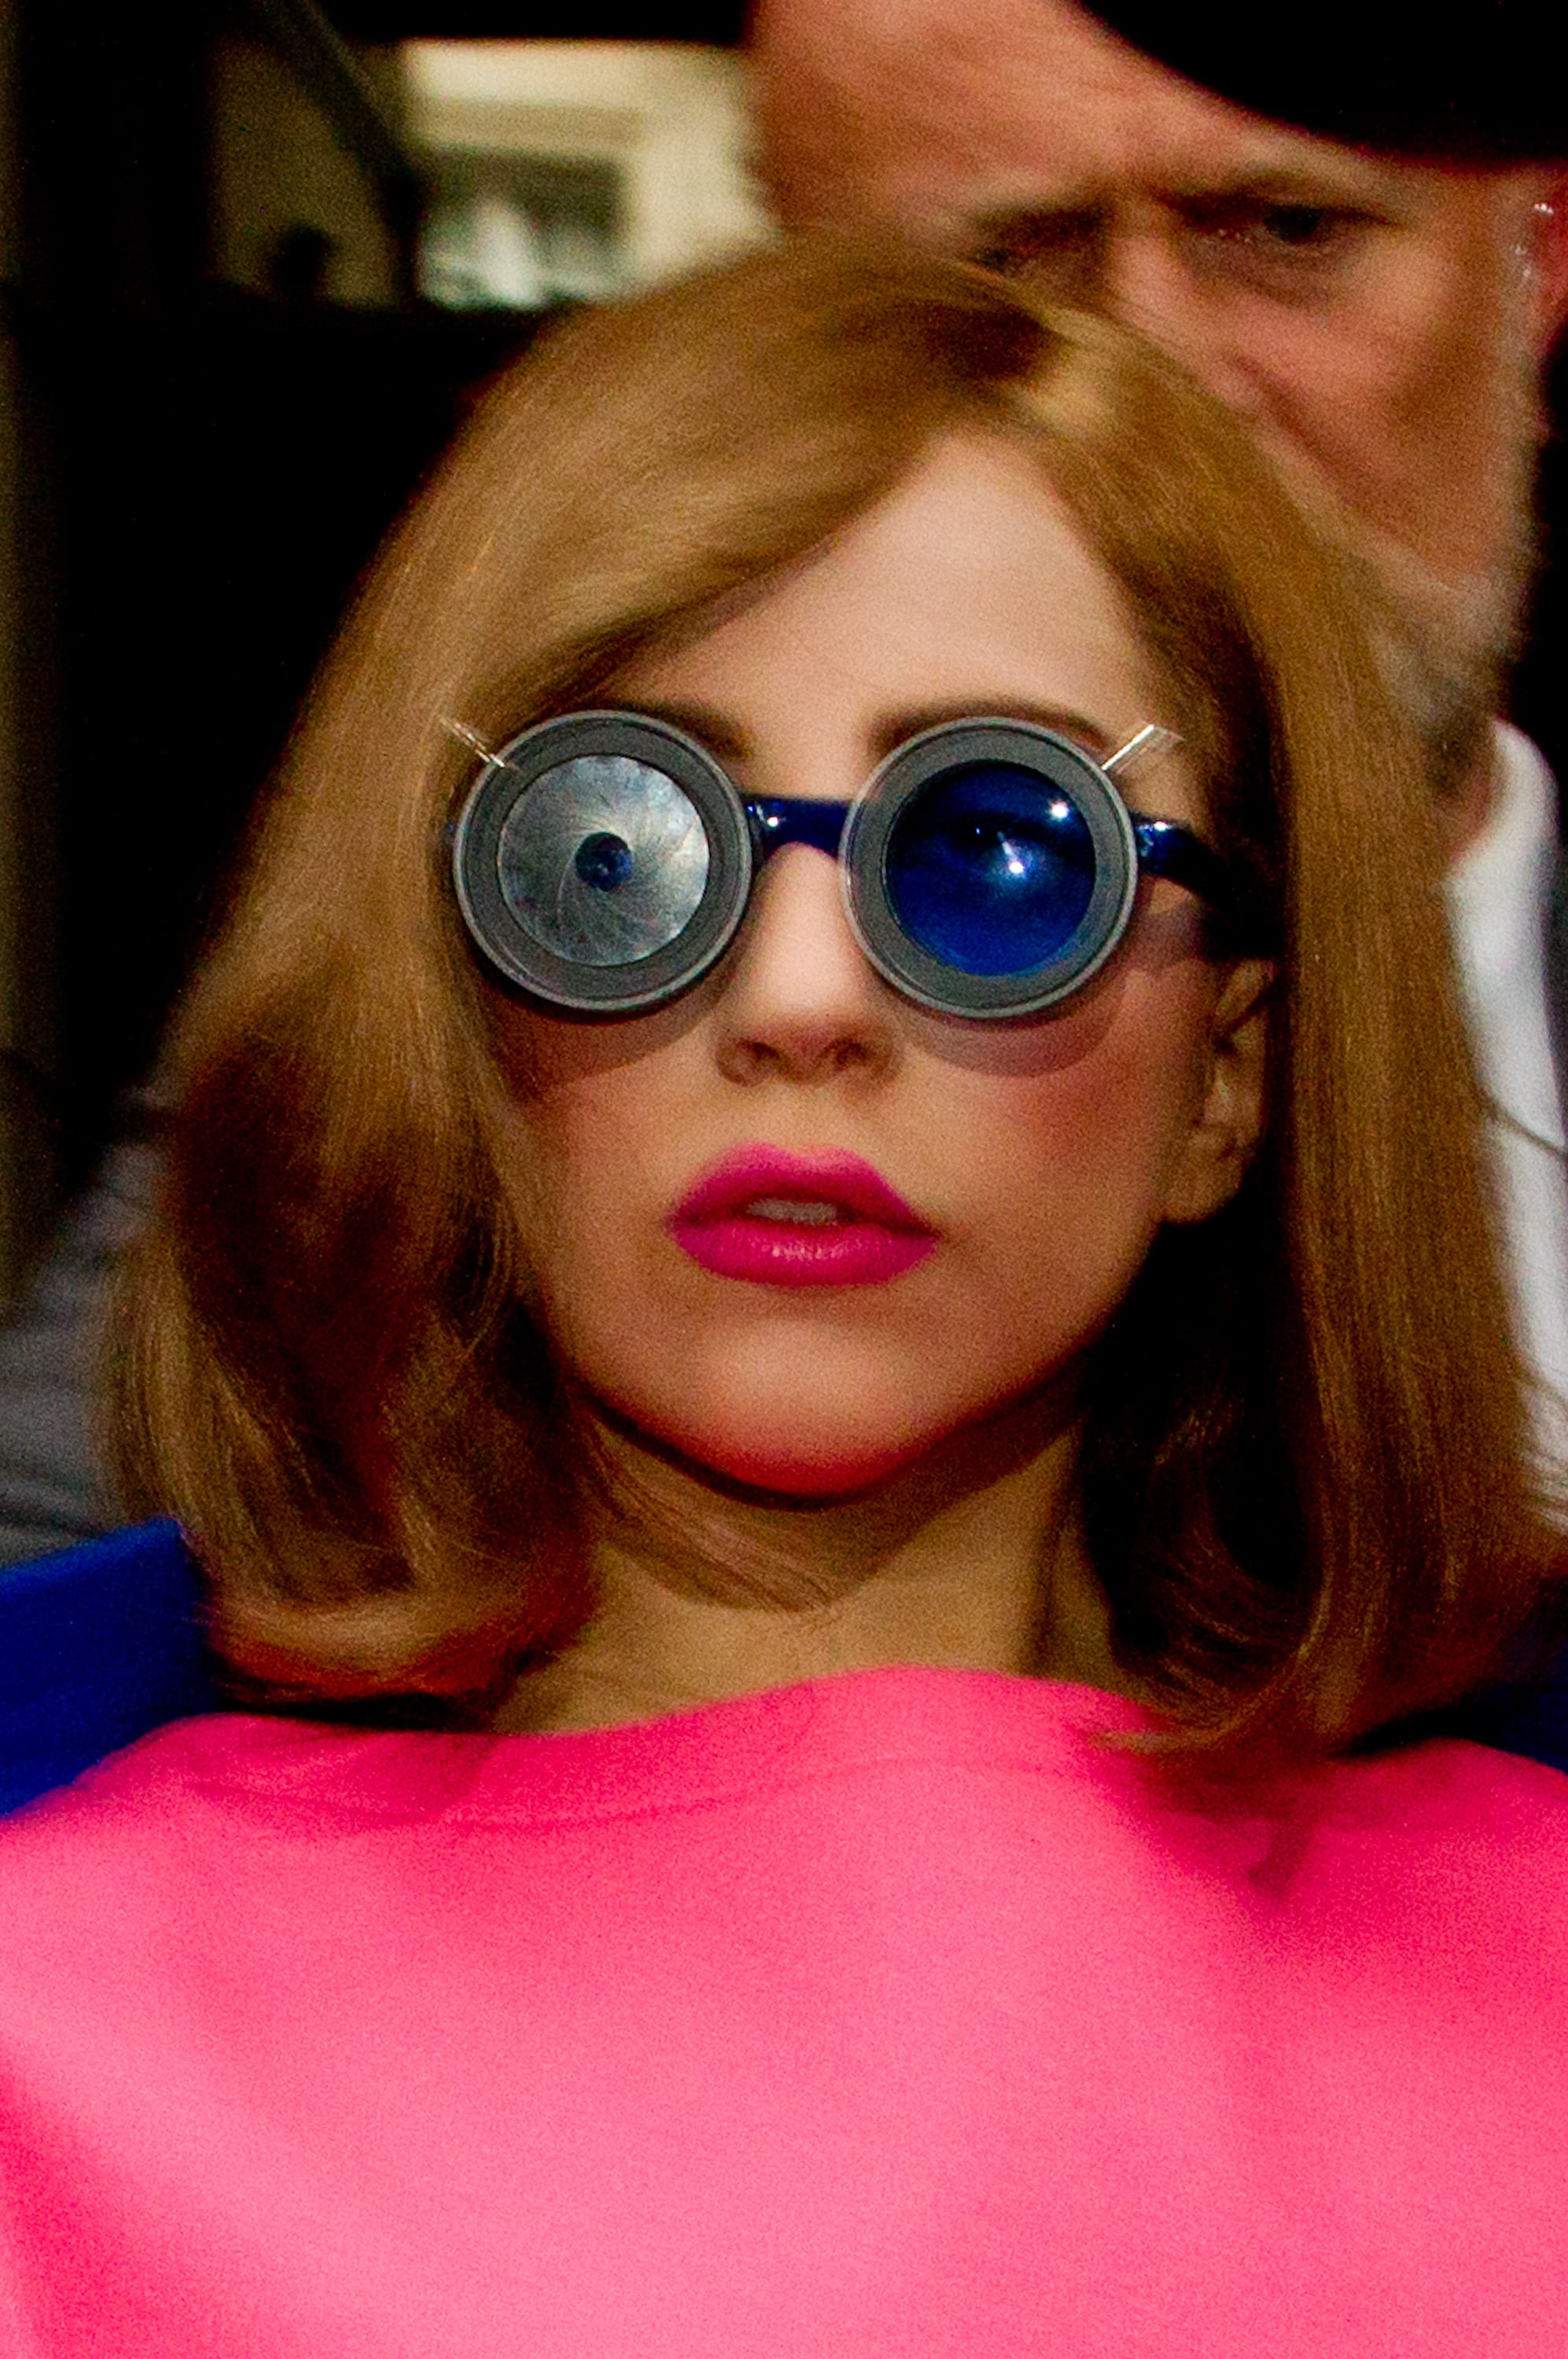 Lady Gaga z kasztanowymi włosami